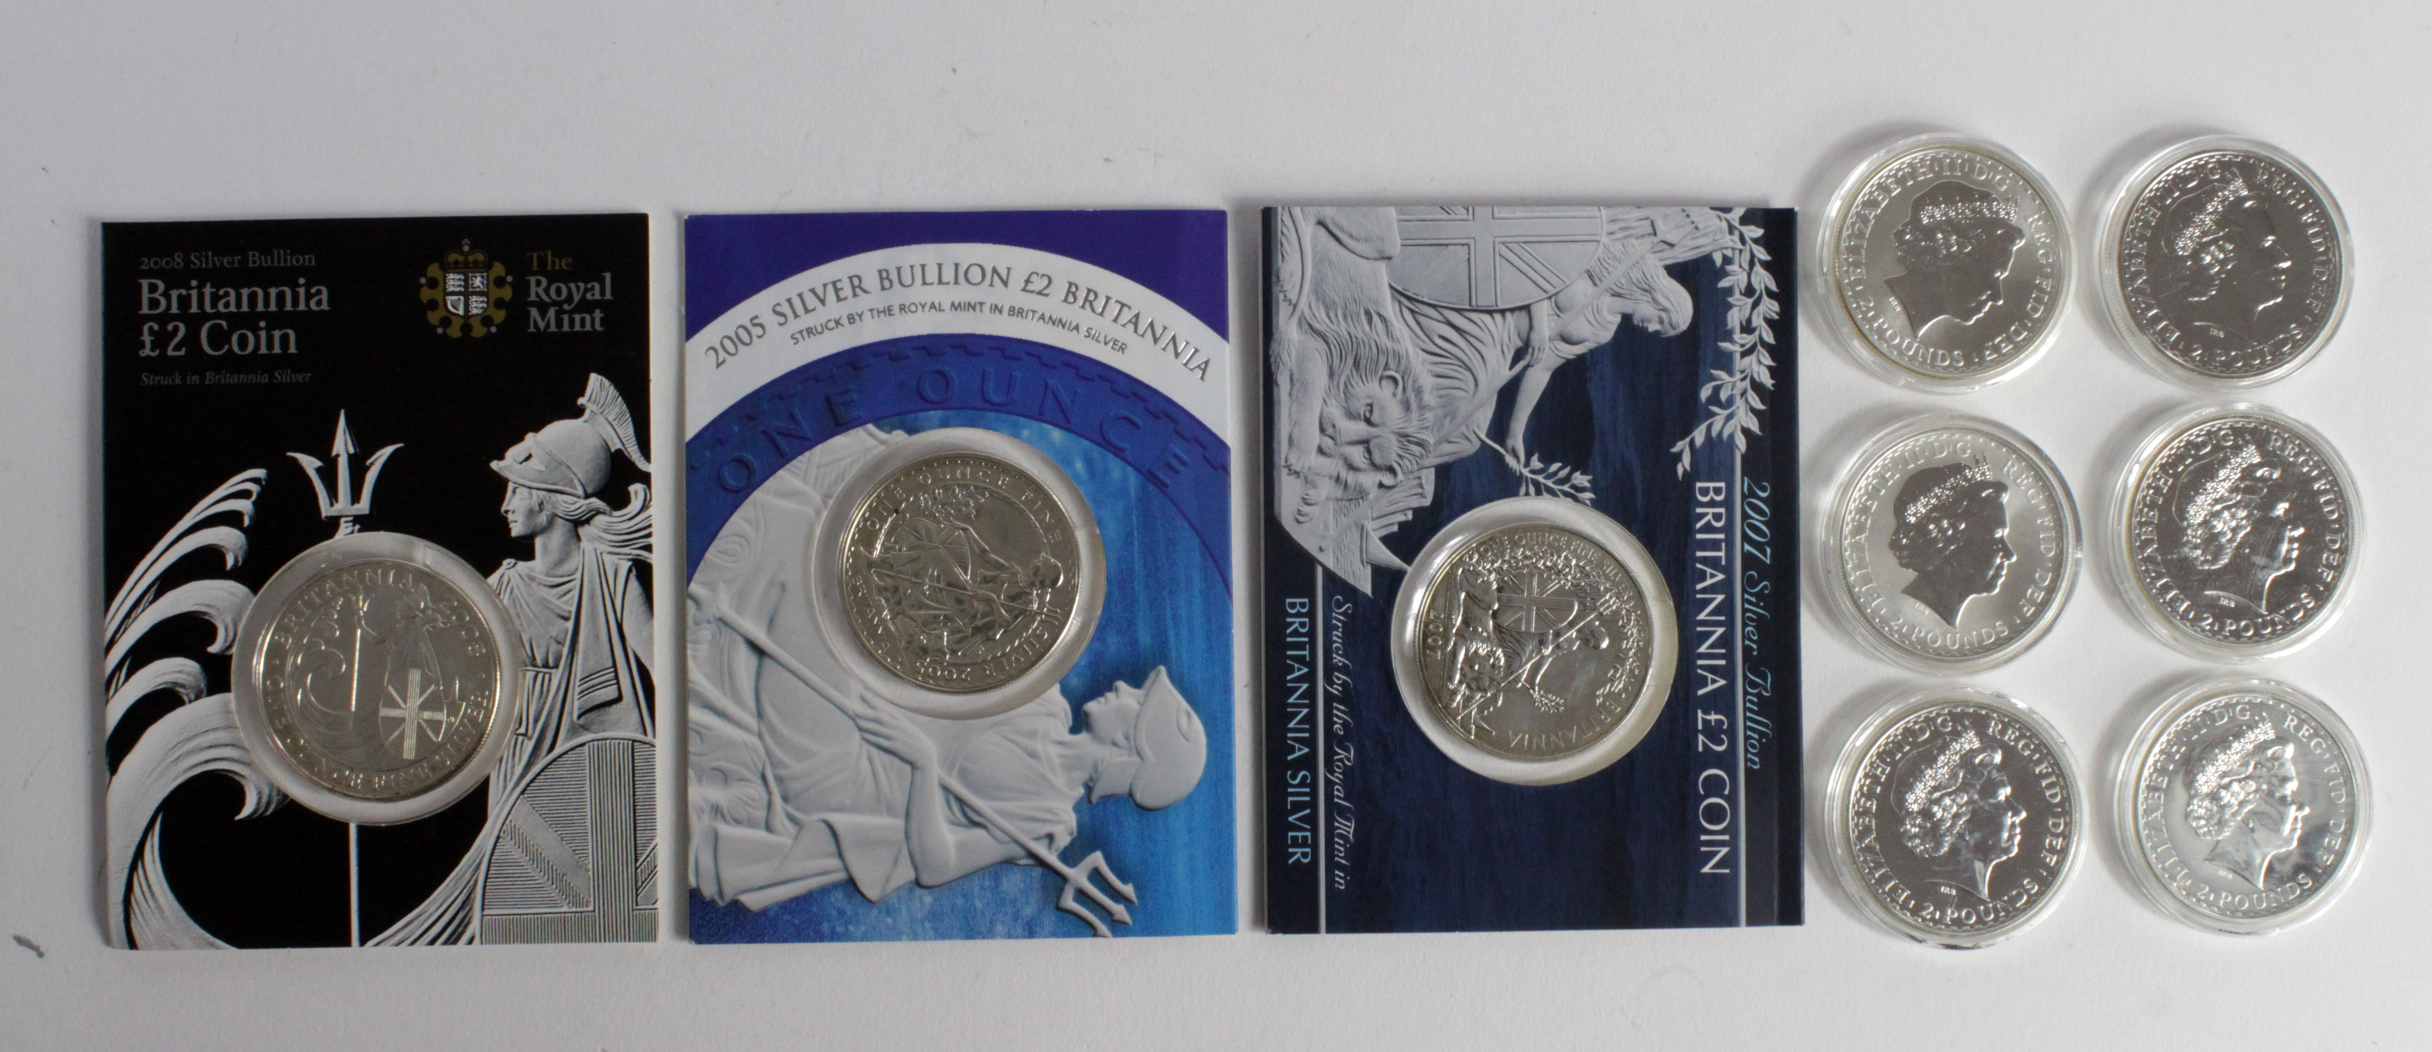 GB Silver Britannias (9) 2000, 01, 02, 03, 05x3, 07 & 2008, aUnc/Unc some with slight toning